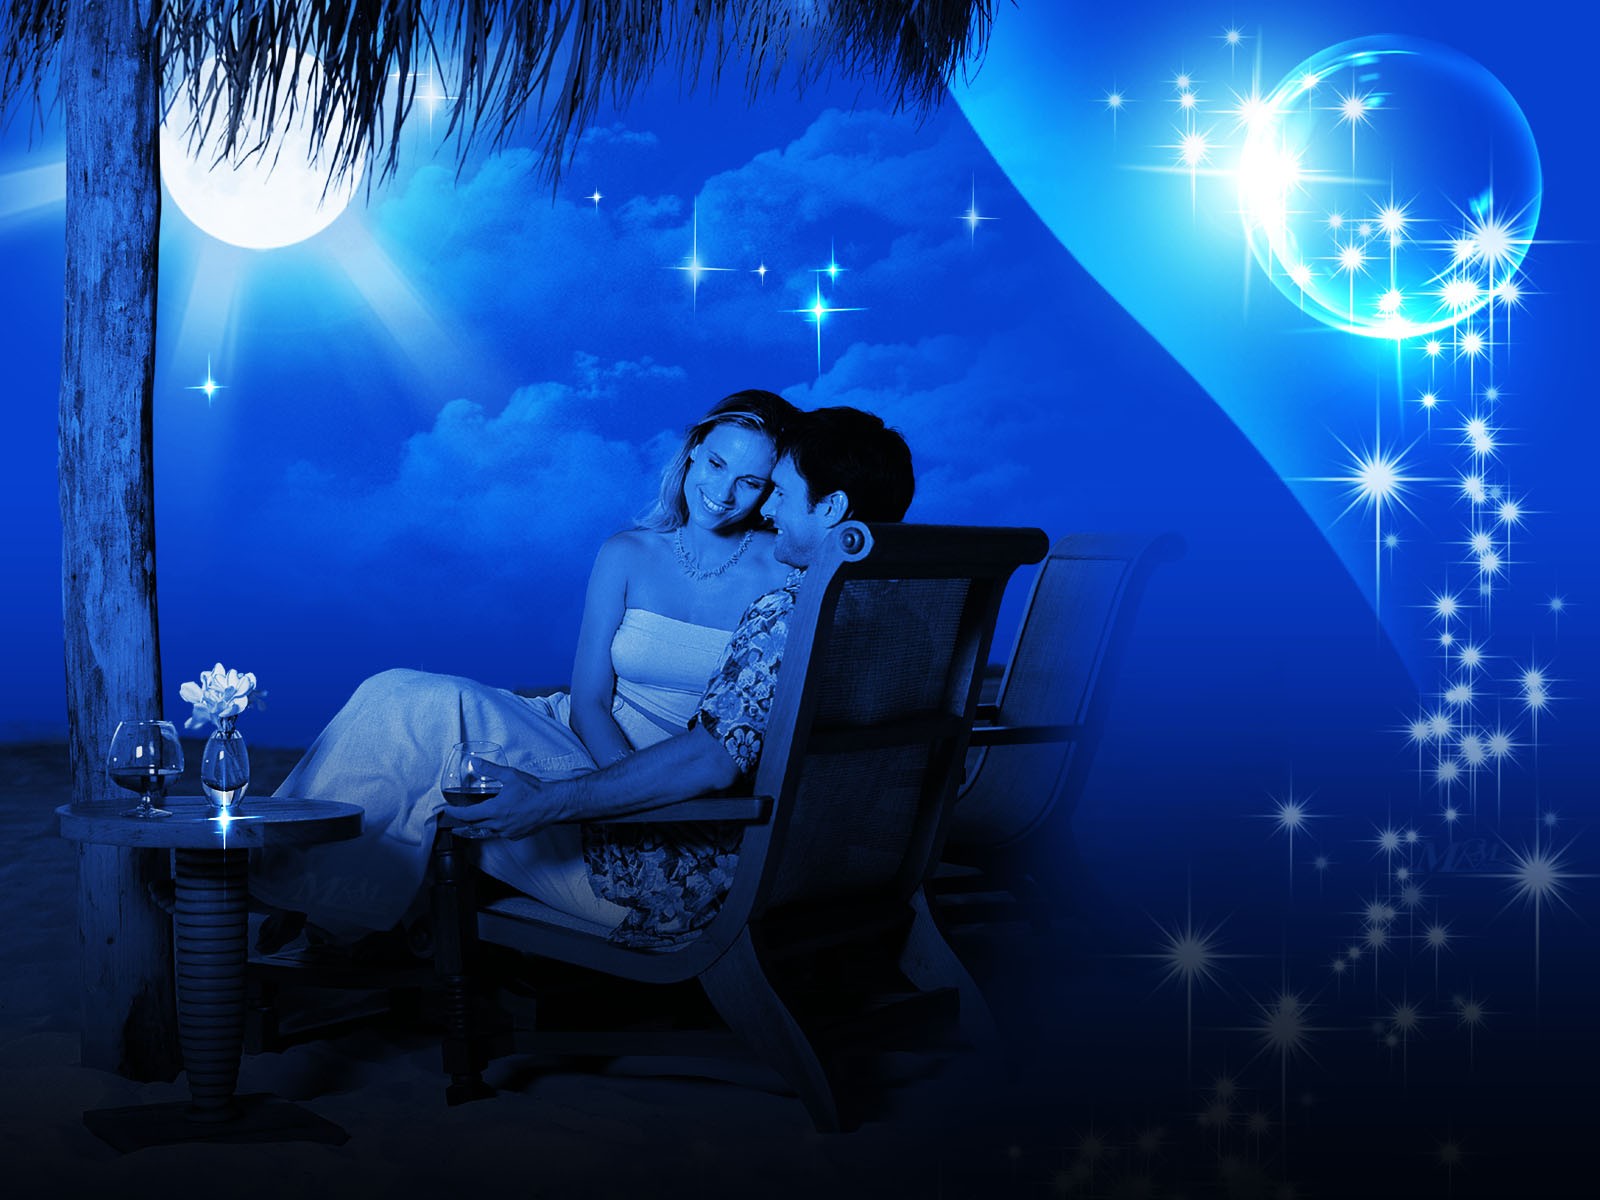 Lovely Couple In Romance Moon Light Romantic Love Wallpaper For